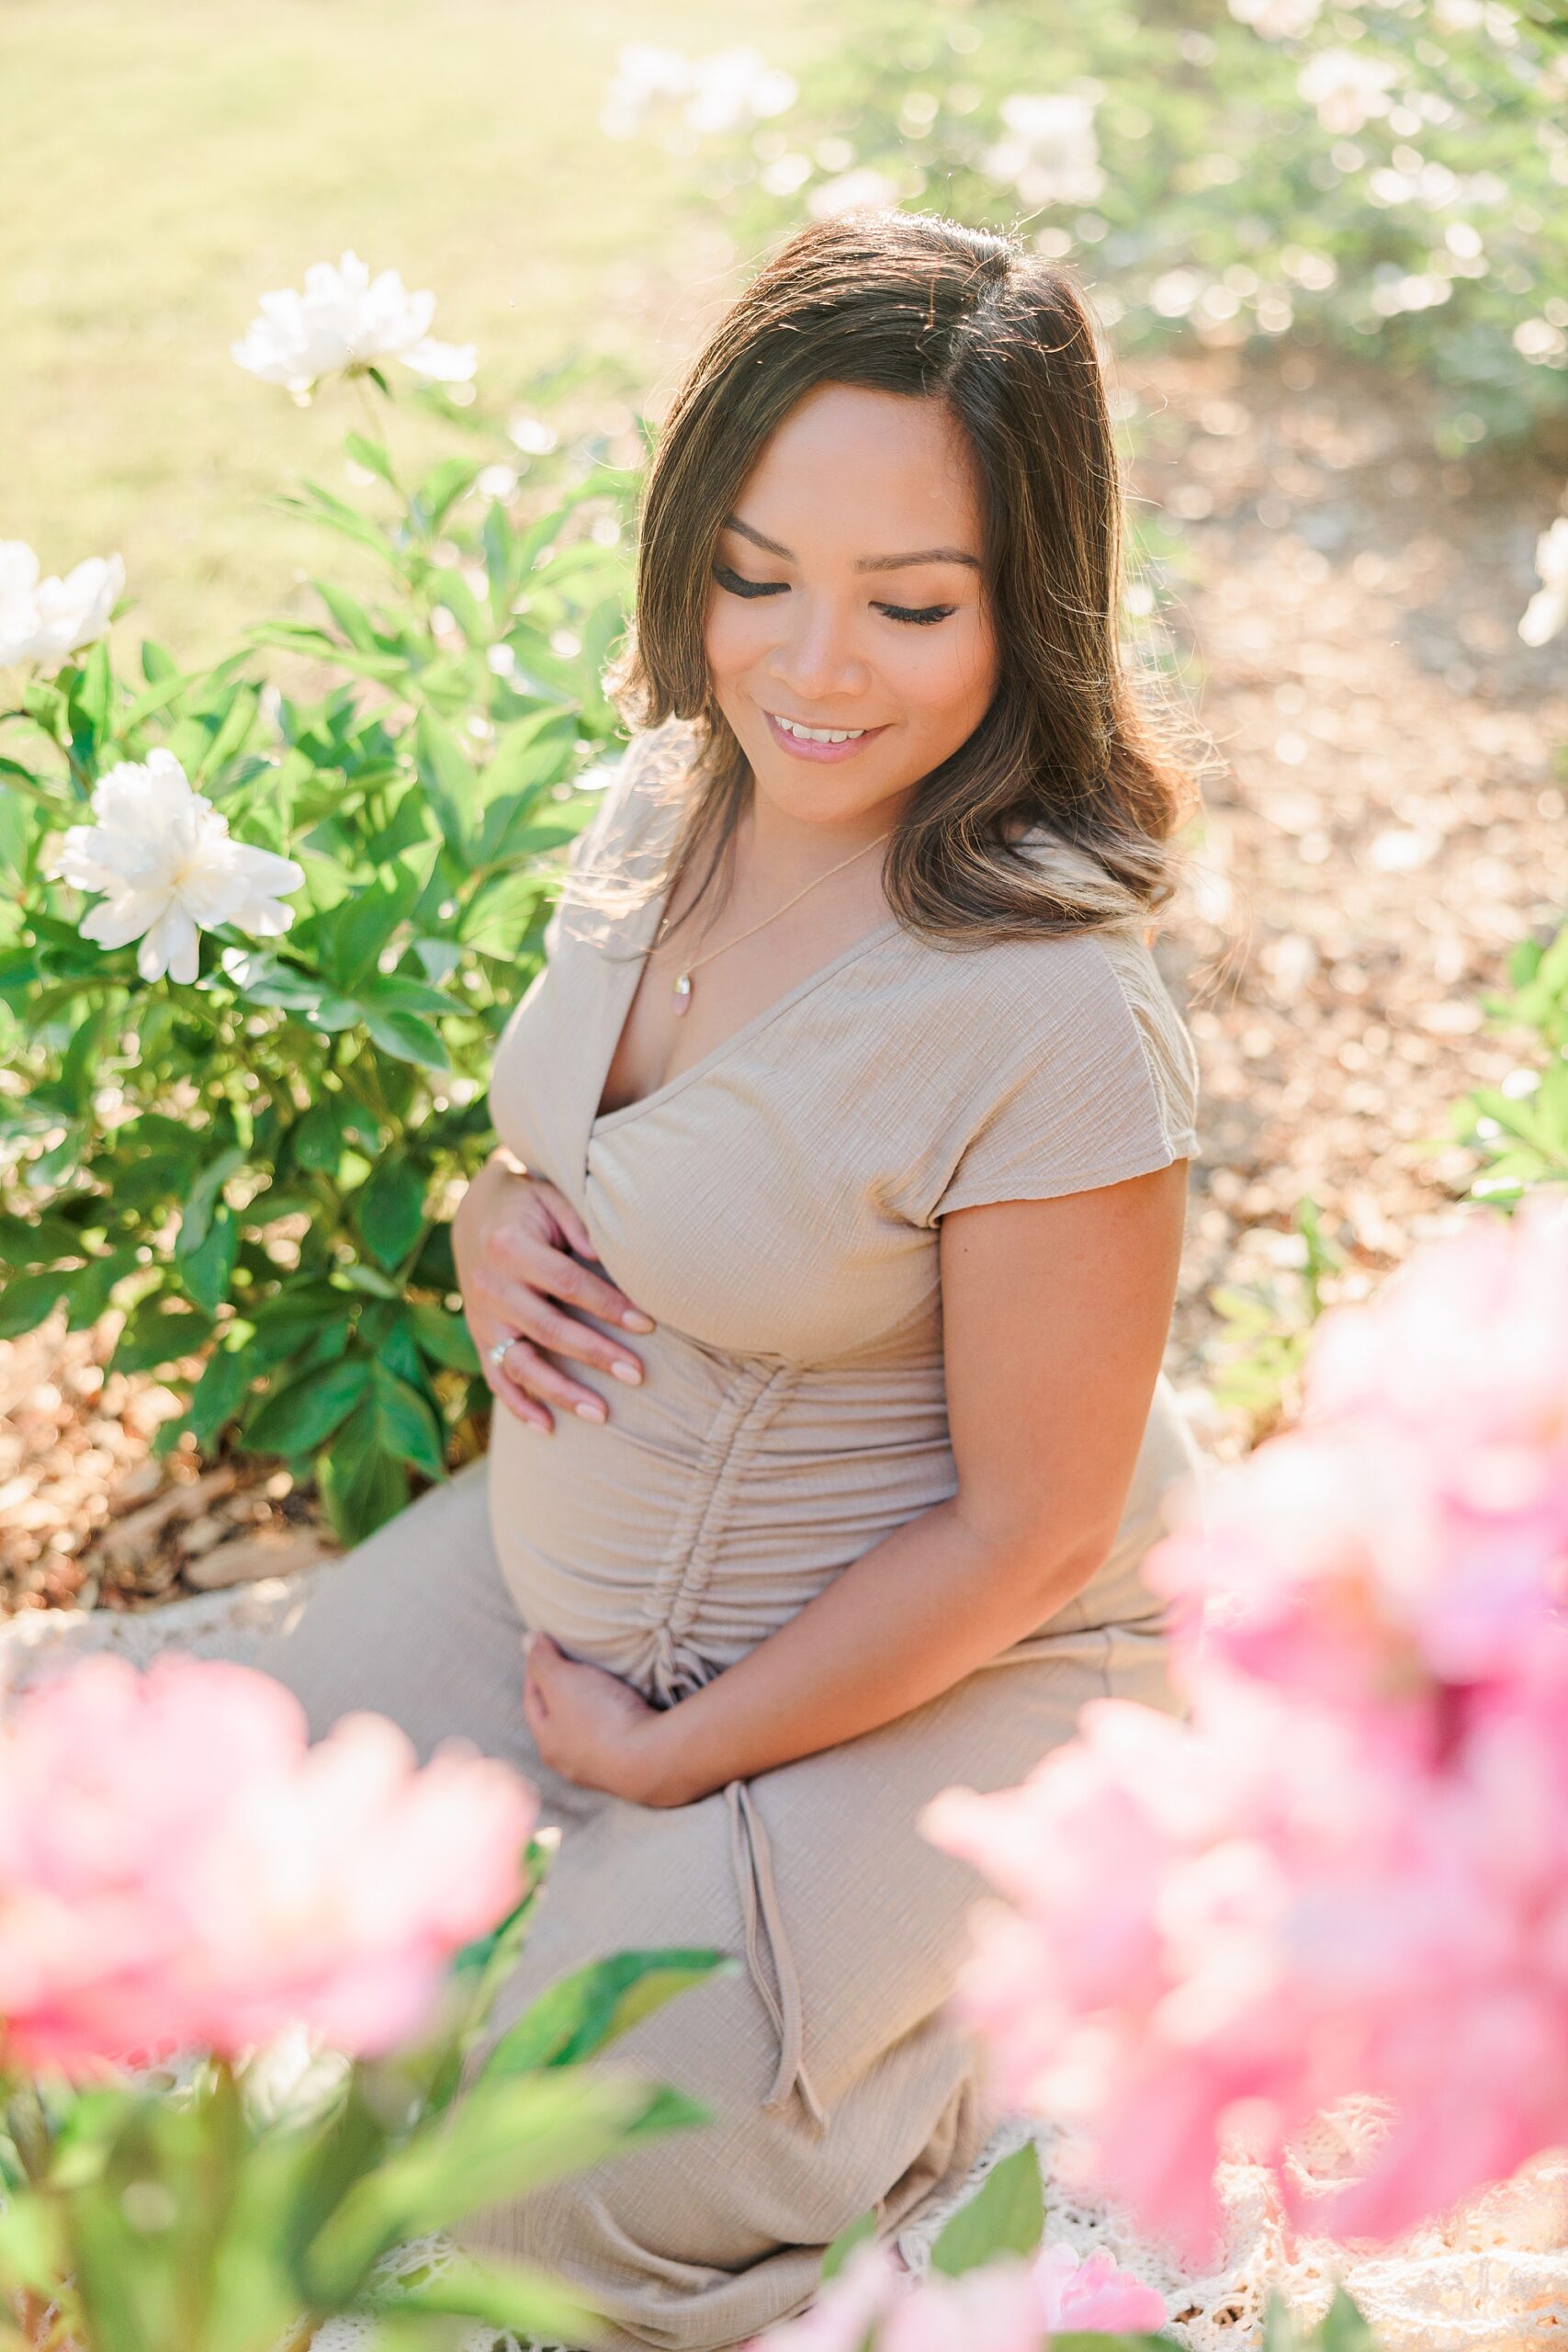 expecting mother sits among pink peonies at Seneca Creek Park